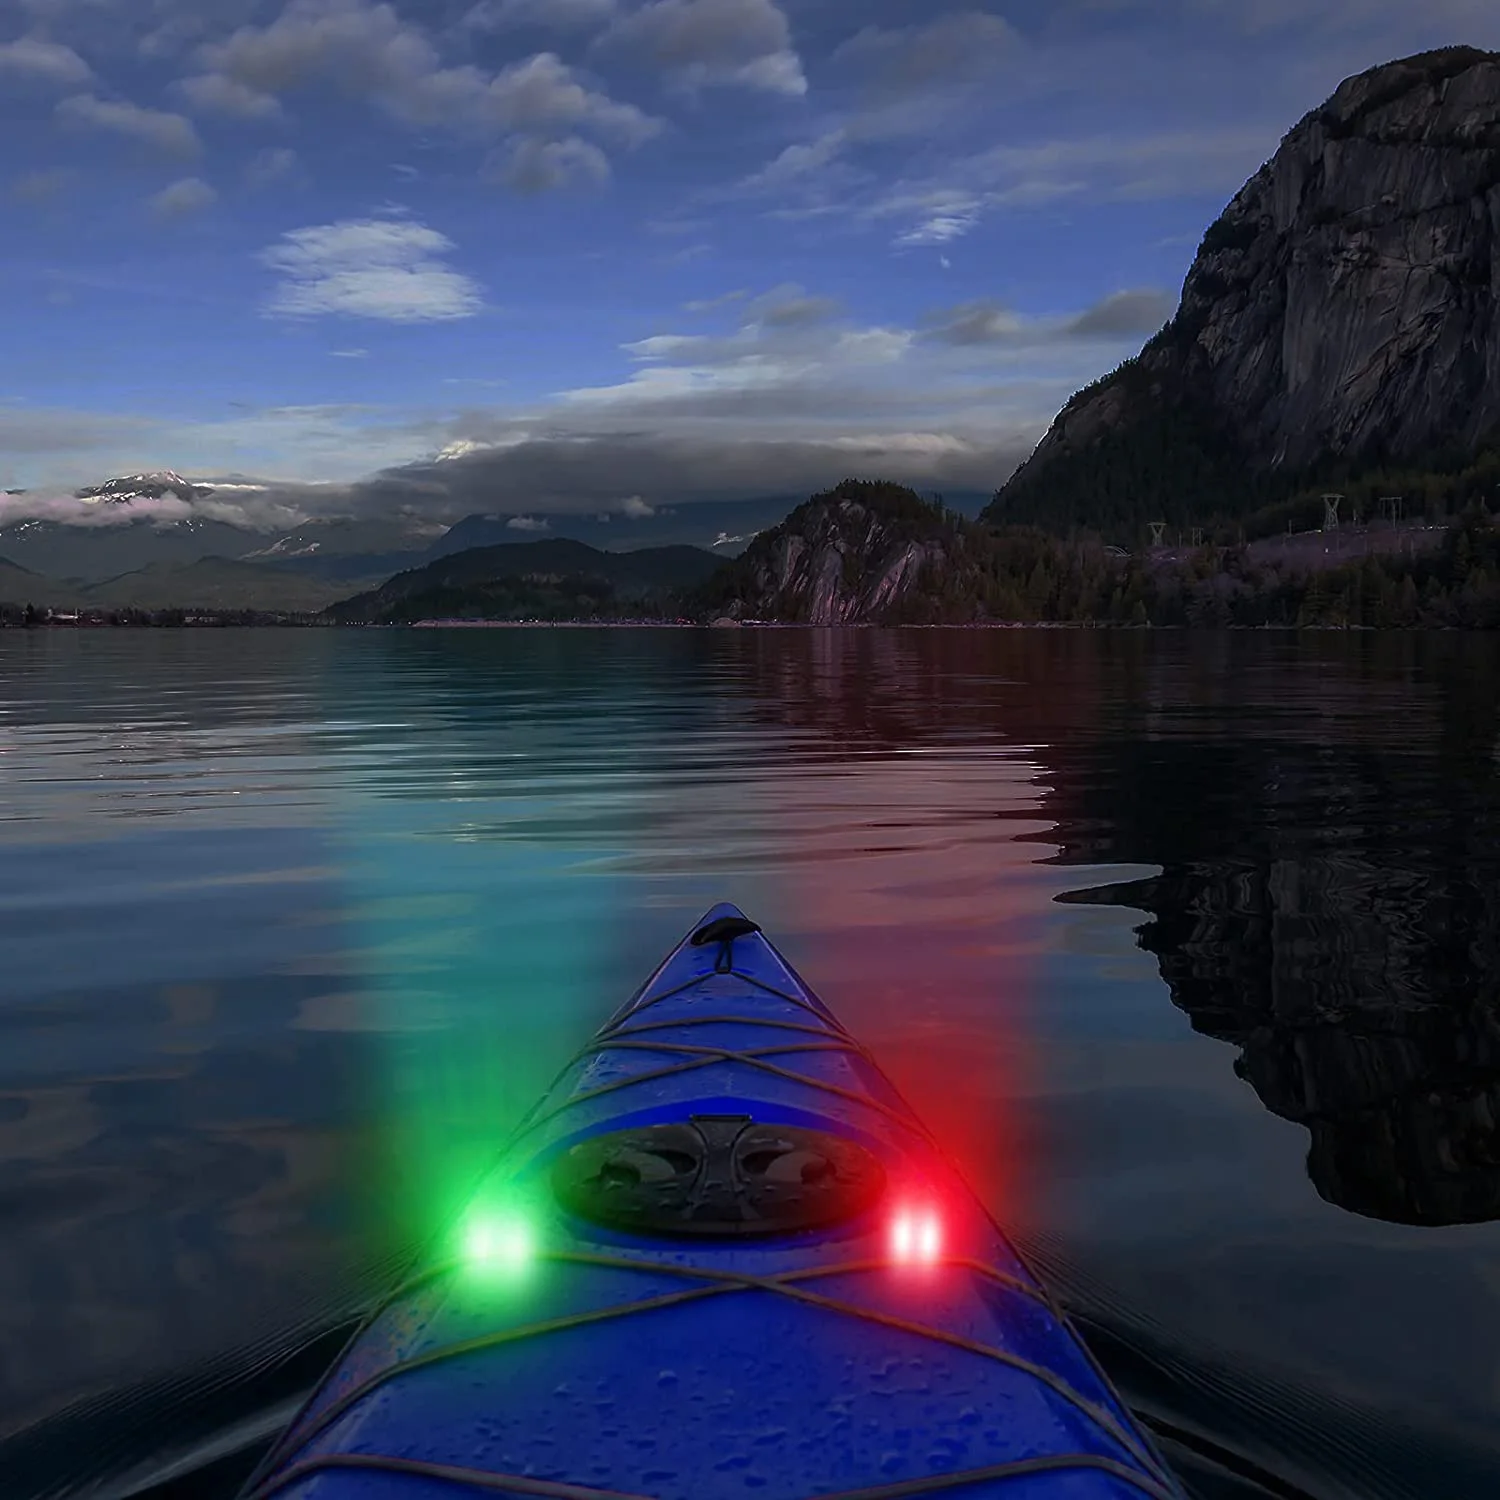 4 x Led стаи навигационни фенер за лодки, Моторни лодки под наем, лов, нощно бягане, риболов (червен, зелен, бял)5